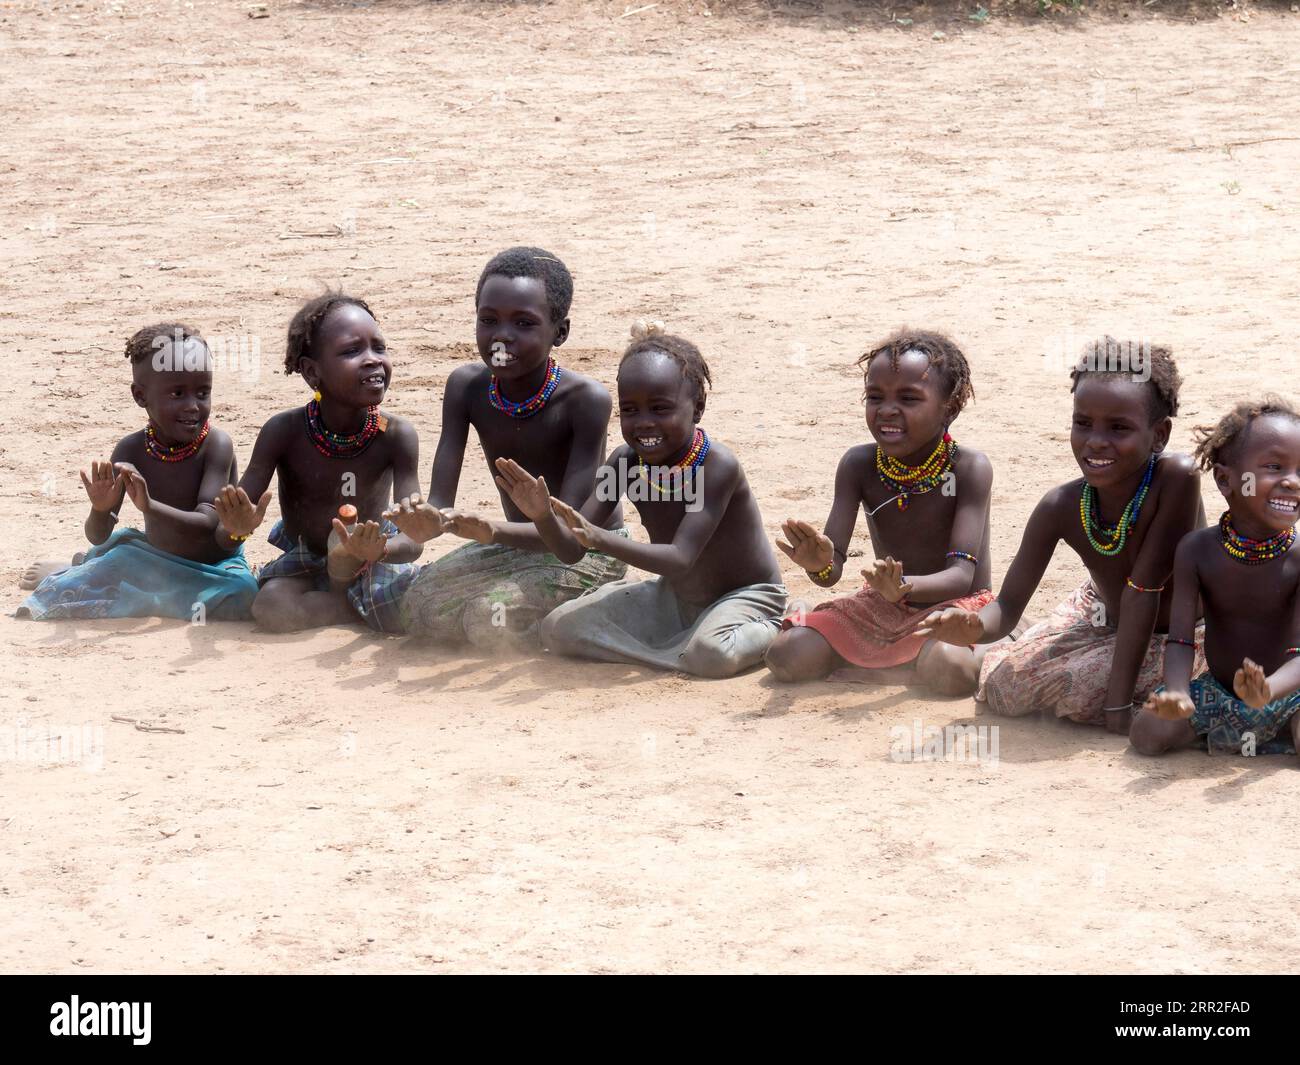 Singende glückliche Kinder sitzen auf sandigem Boden, Dassanech-Stamm, Äthiopien Stockfoto